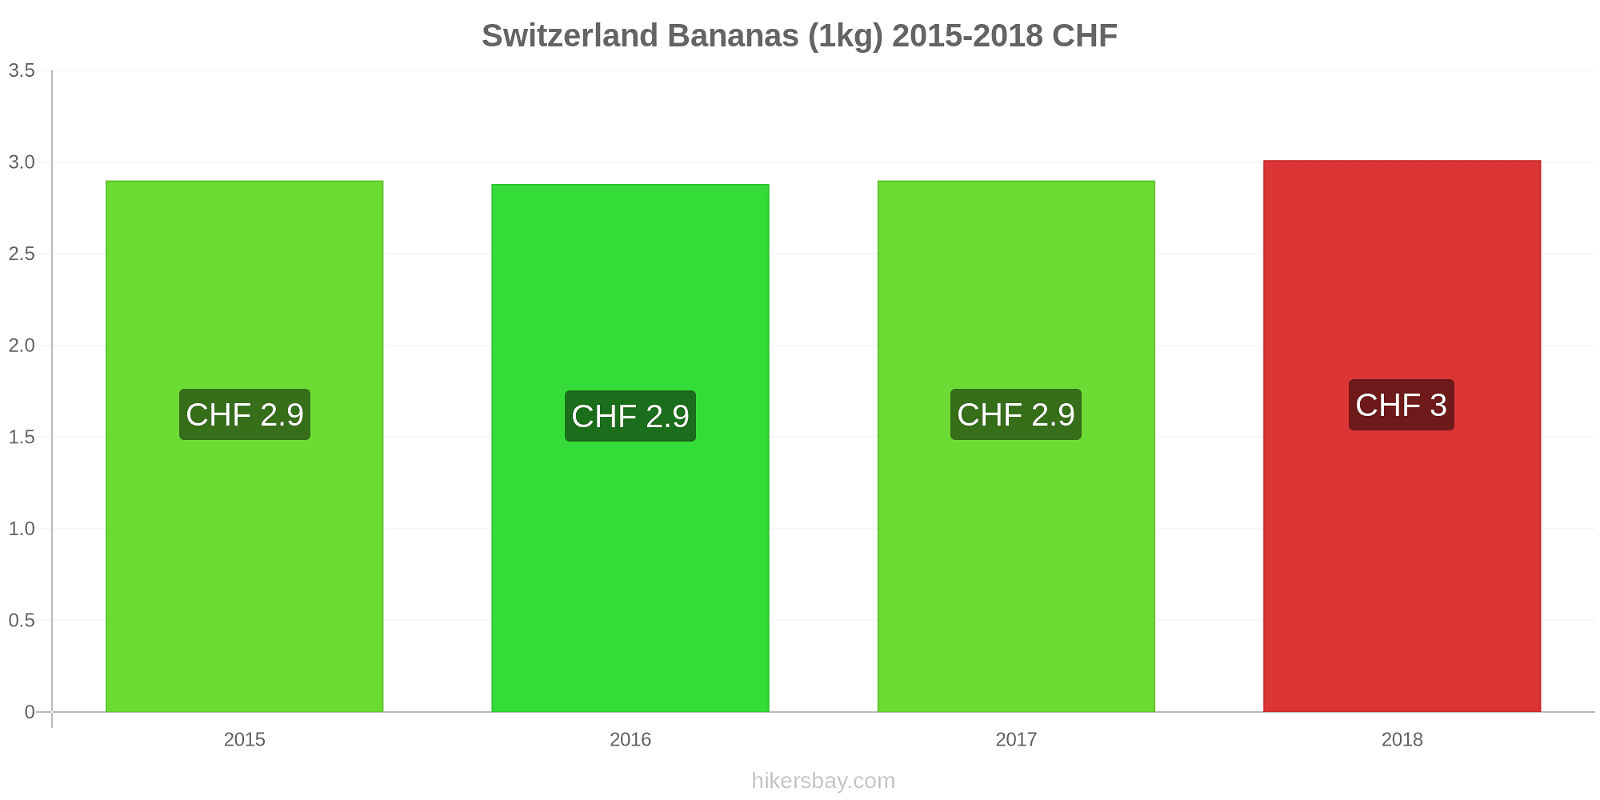 Switzerland price changes Bananas (1kg) hikersbay.com